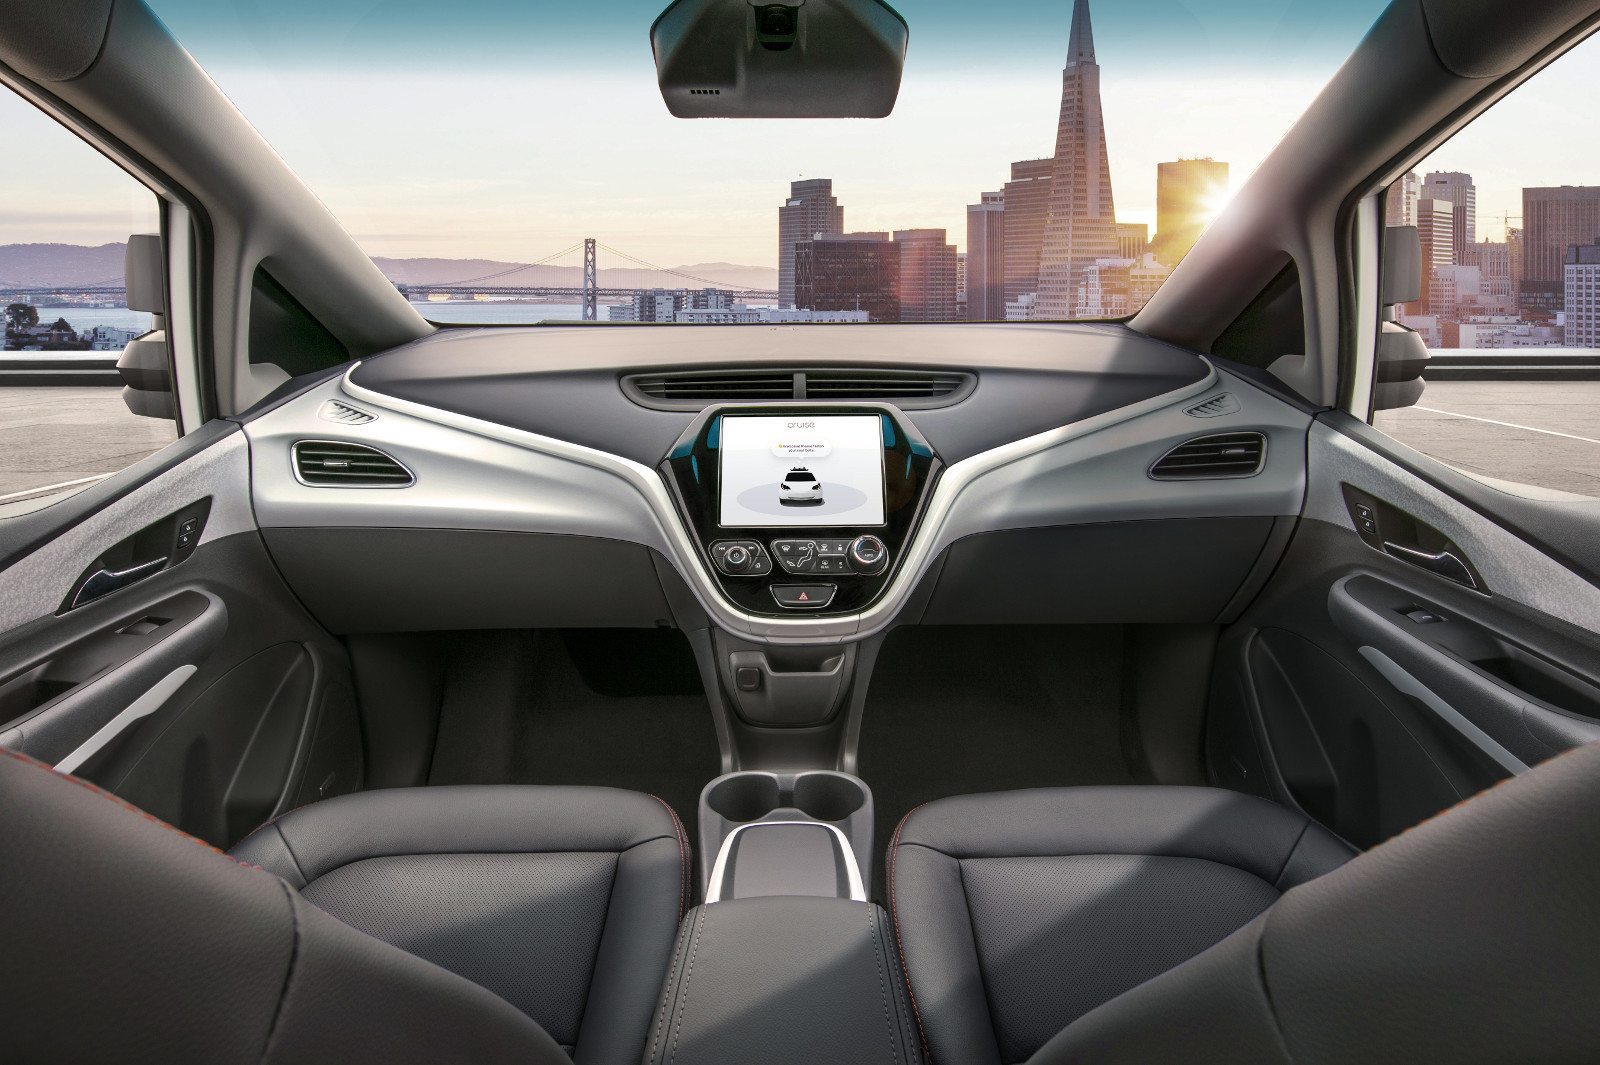 General Motors quiere liberar el vehículo sin sistema de control manual